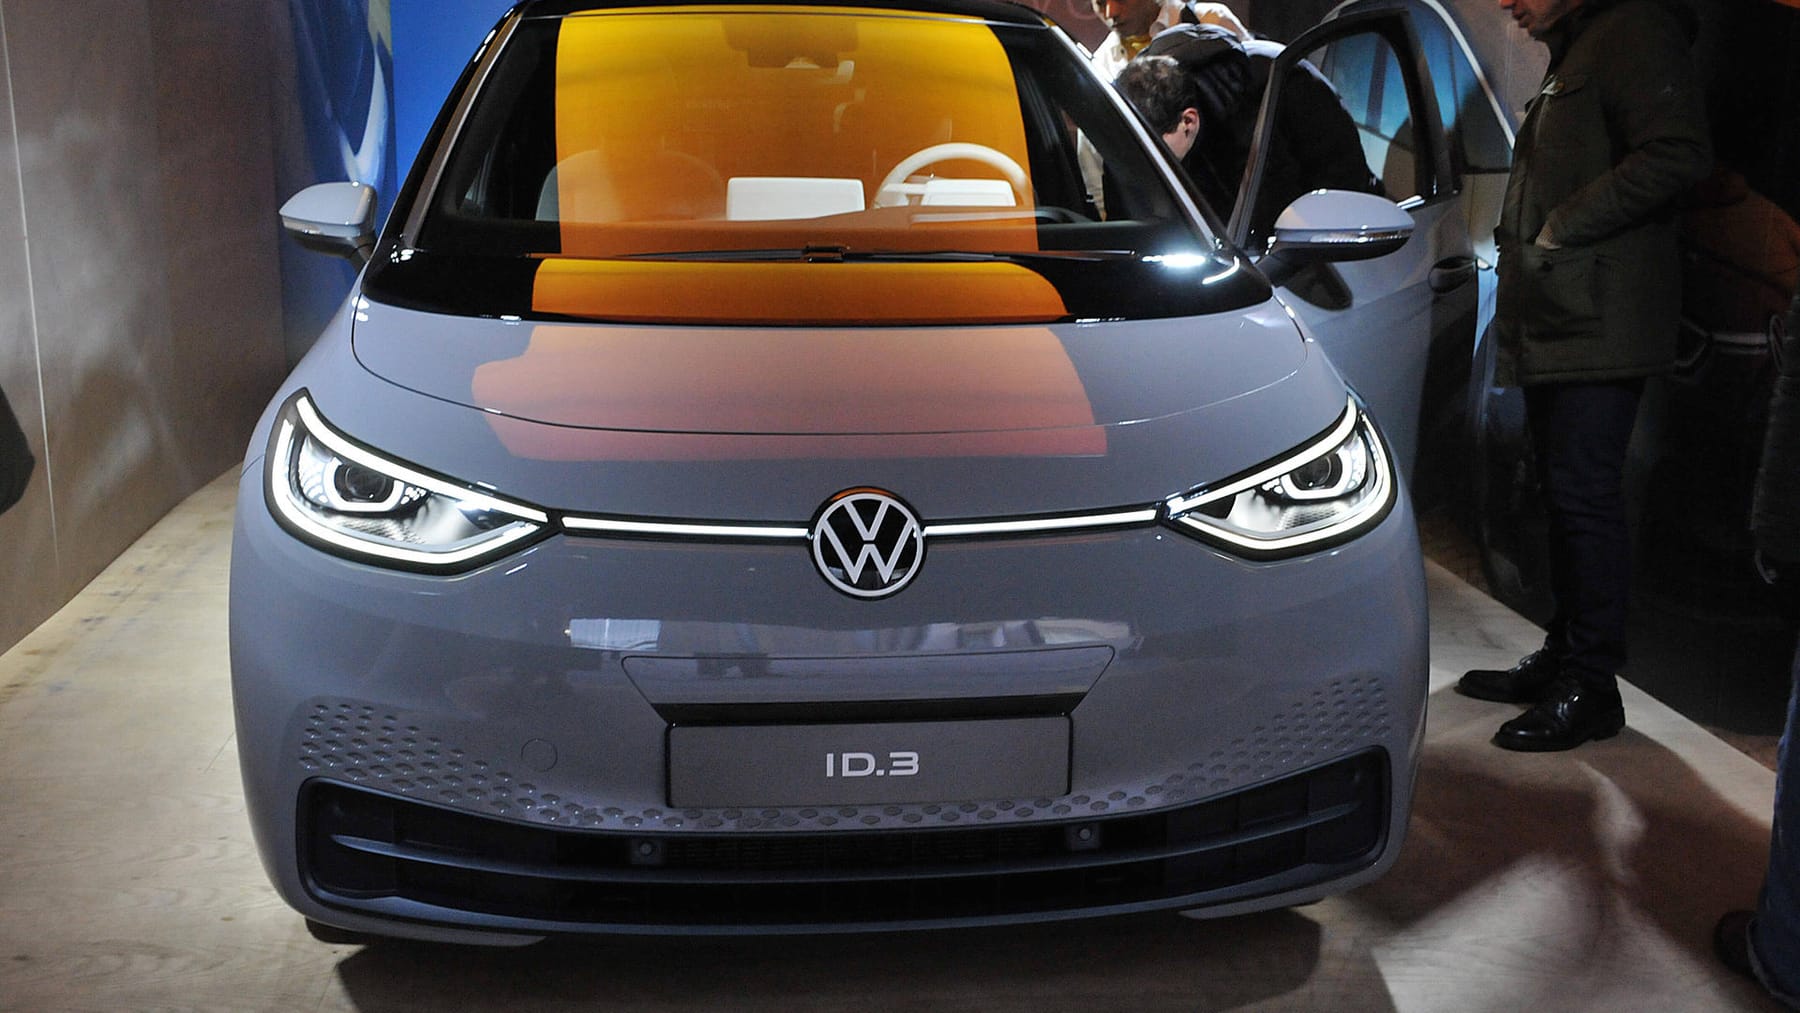 VW startet Auslieferung des ID.3: E-Reihe soll Konzern verändern